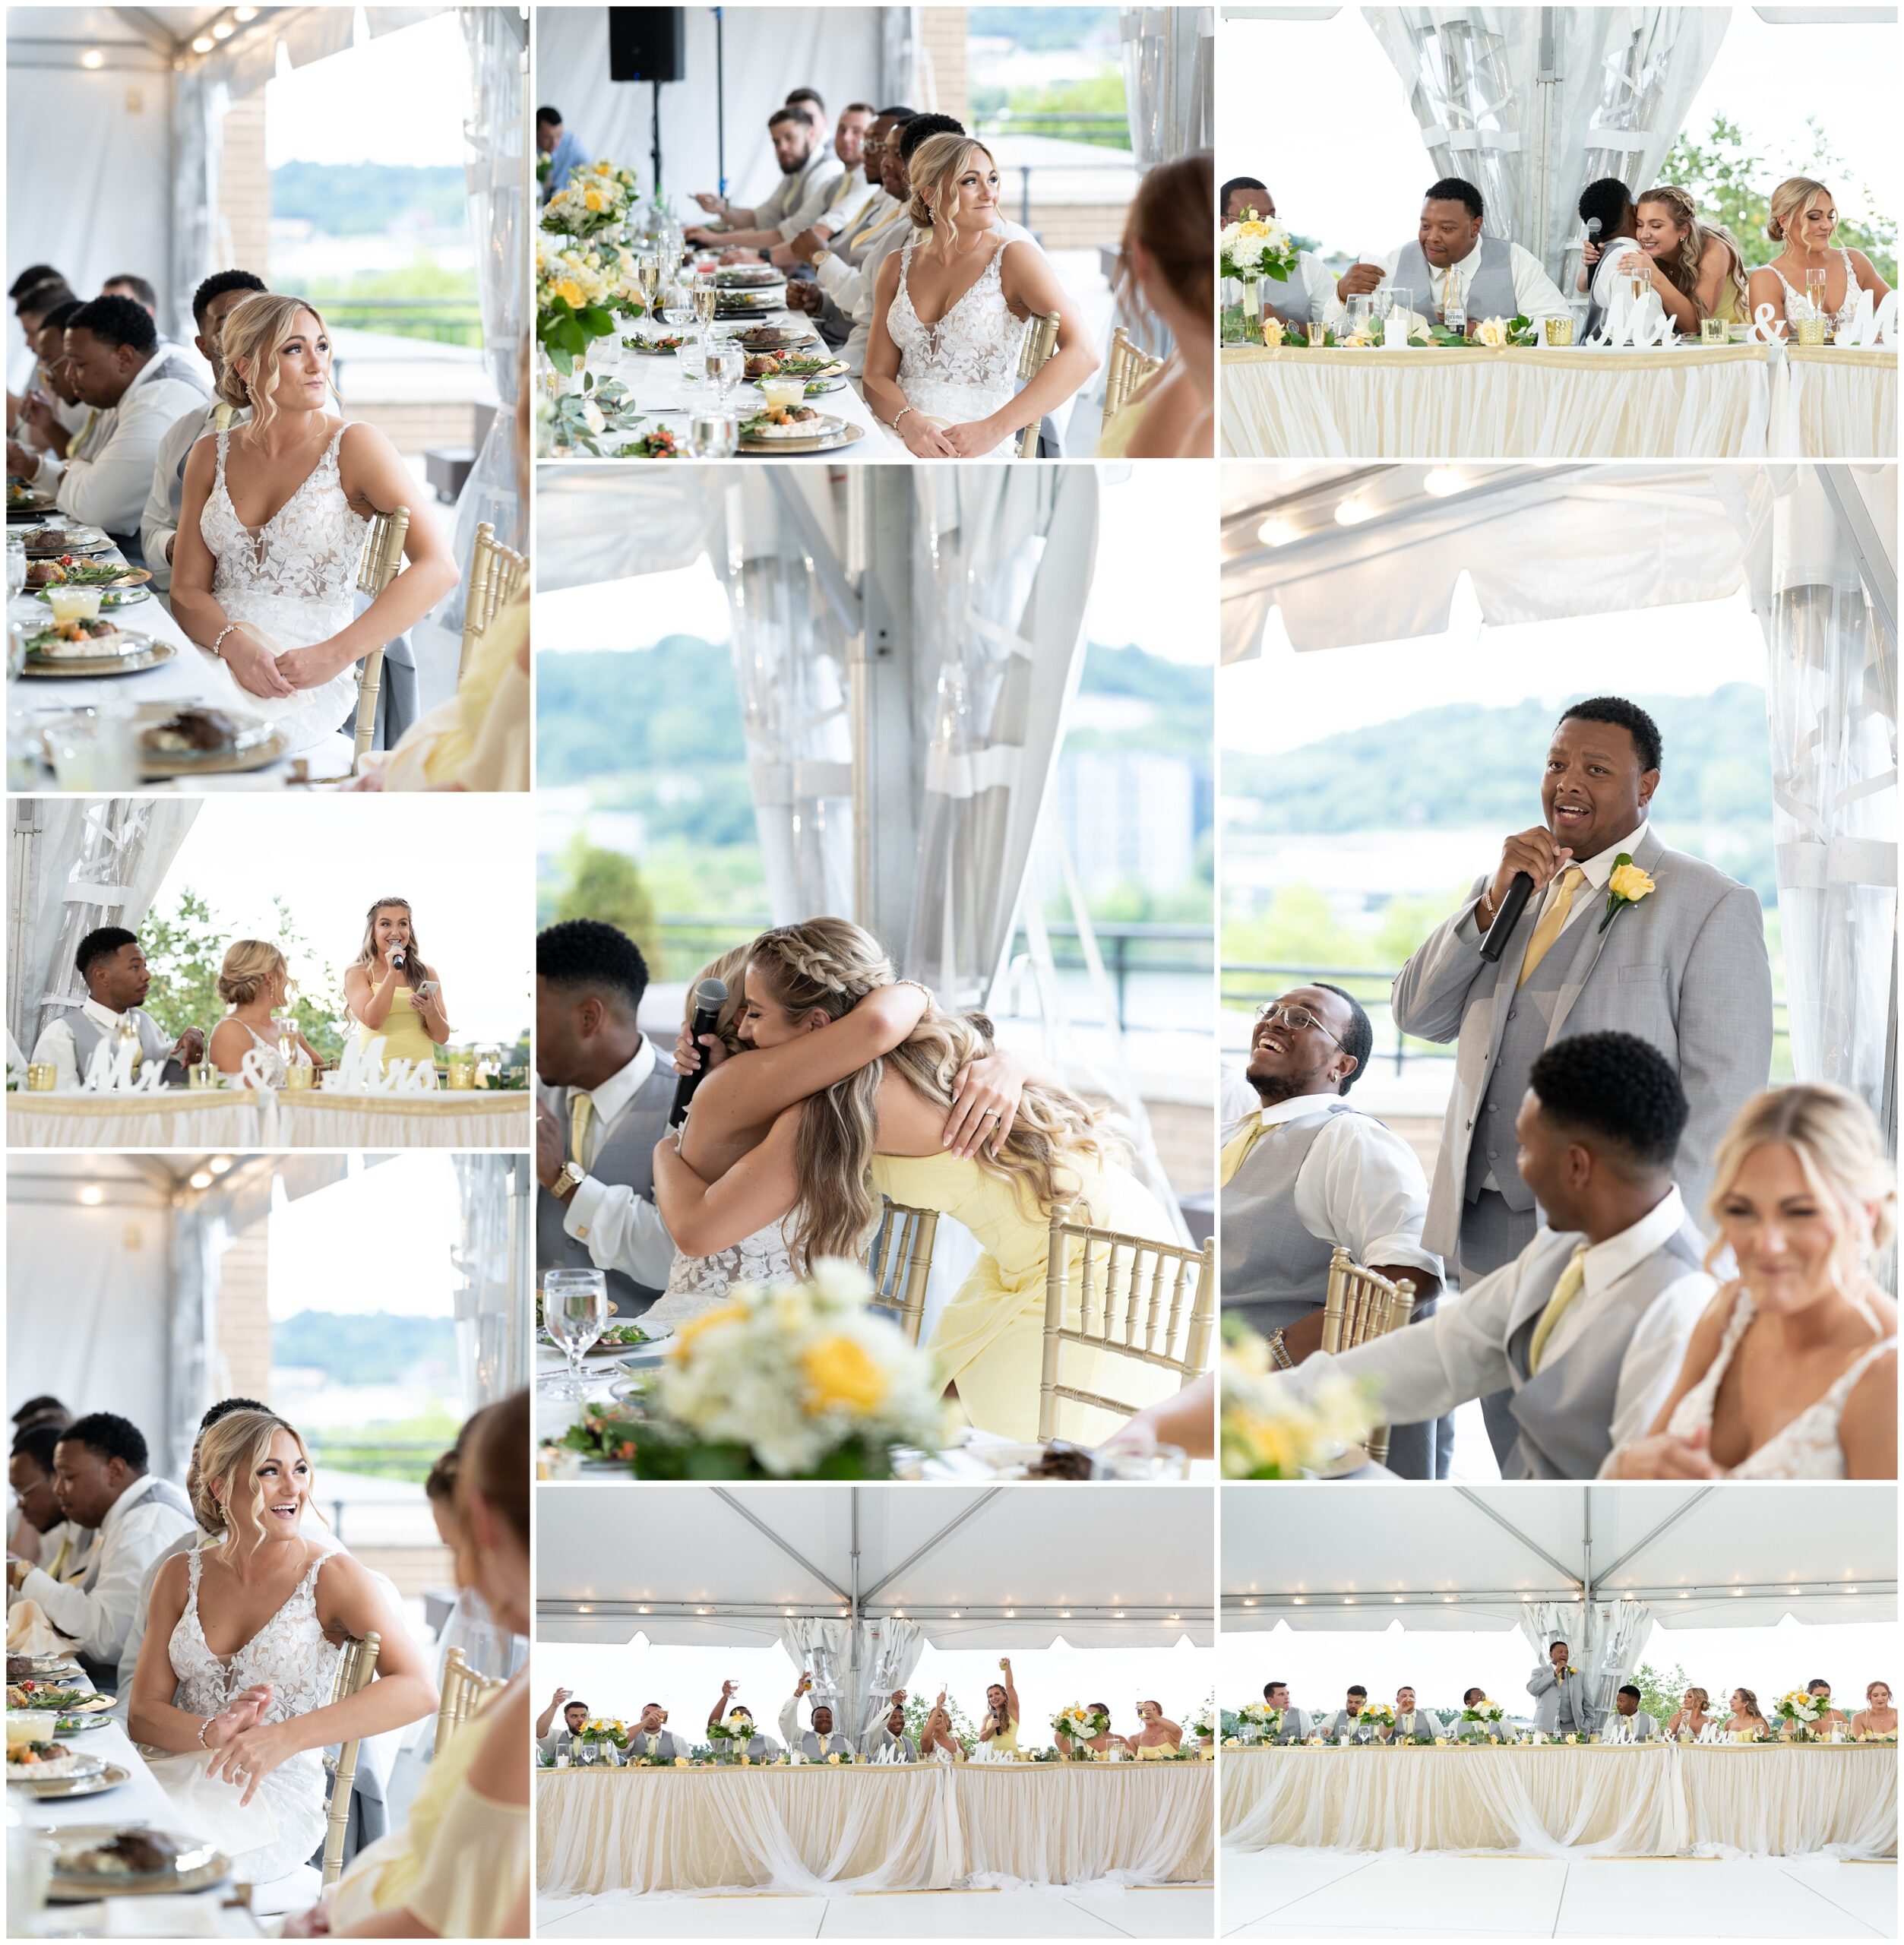 Hyatt House Southside Wedding in Pittsburgh PA Photographed by Pittsburgh Wedding Photographer Acevedo Weddings